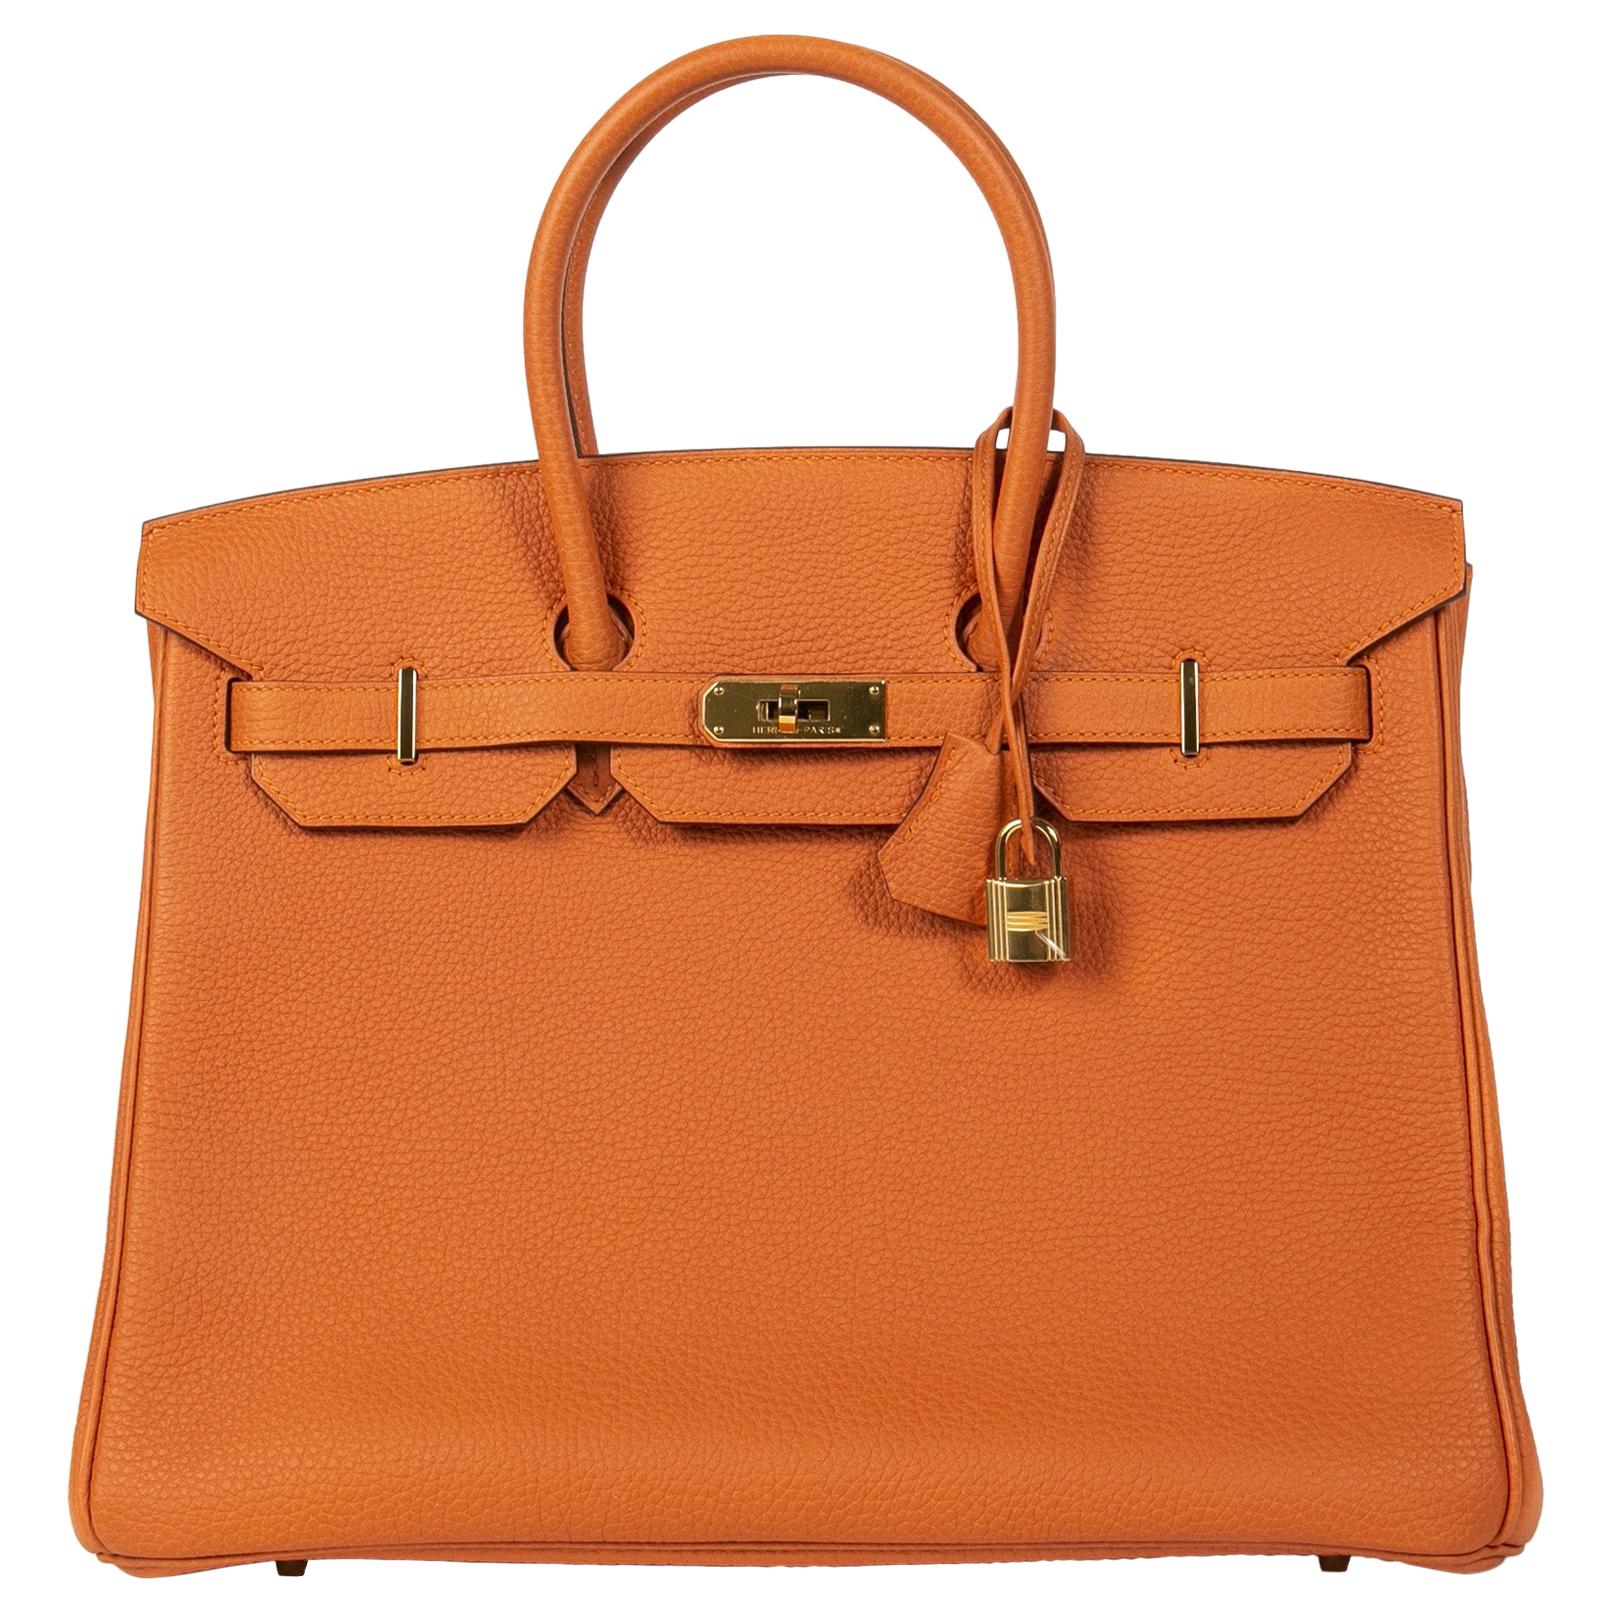 NEW Hermès Birkin 35 Orange Togo GHW at 